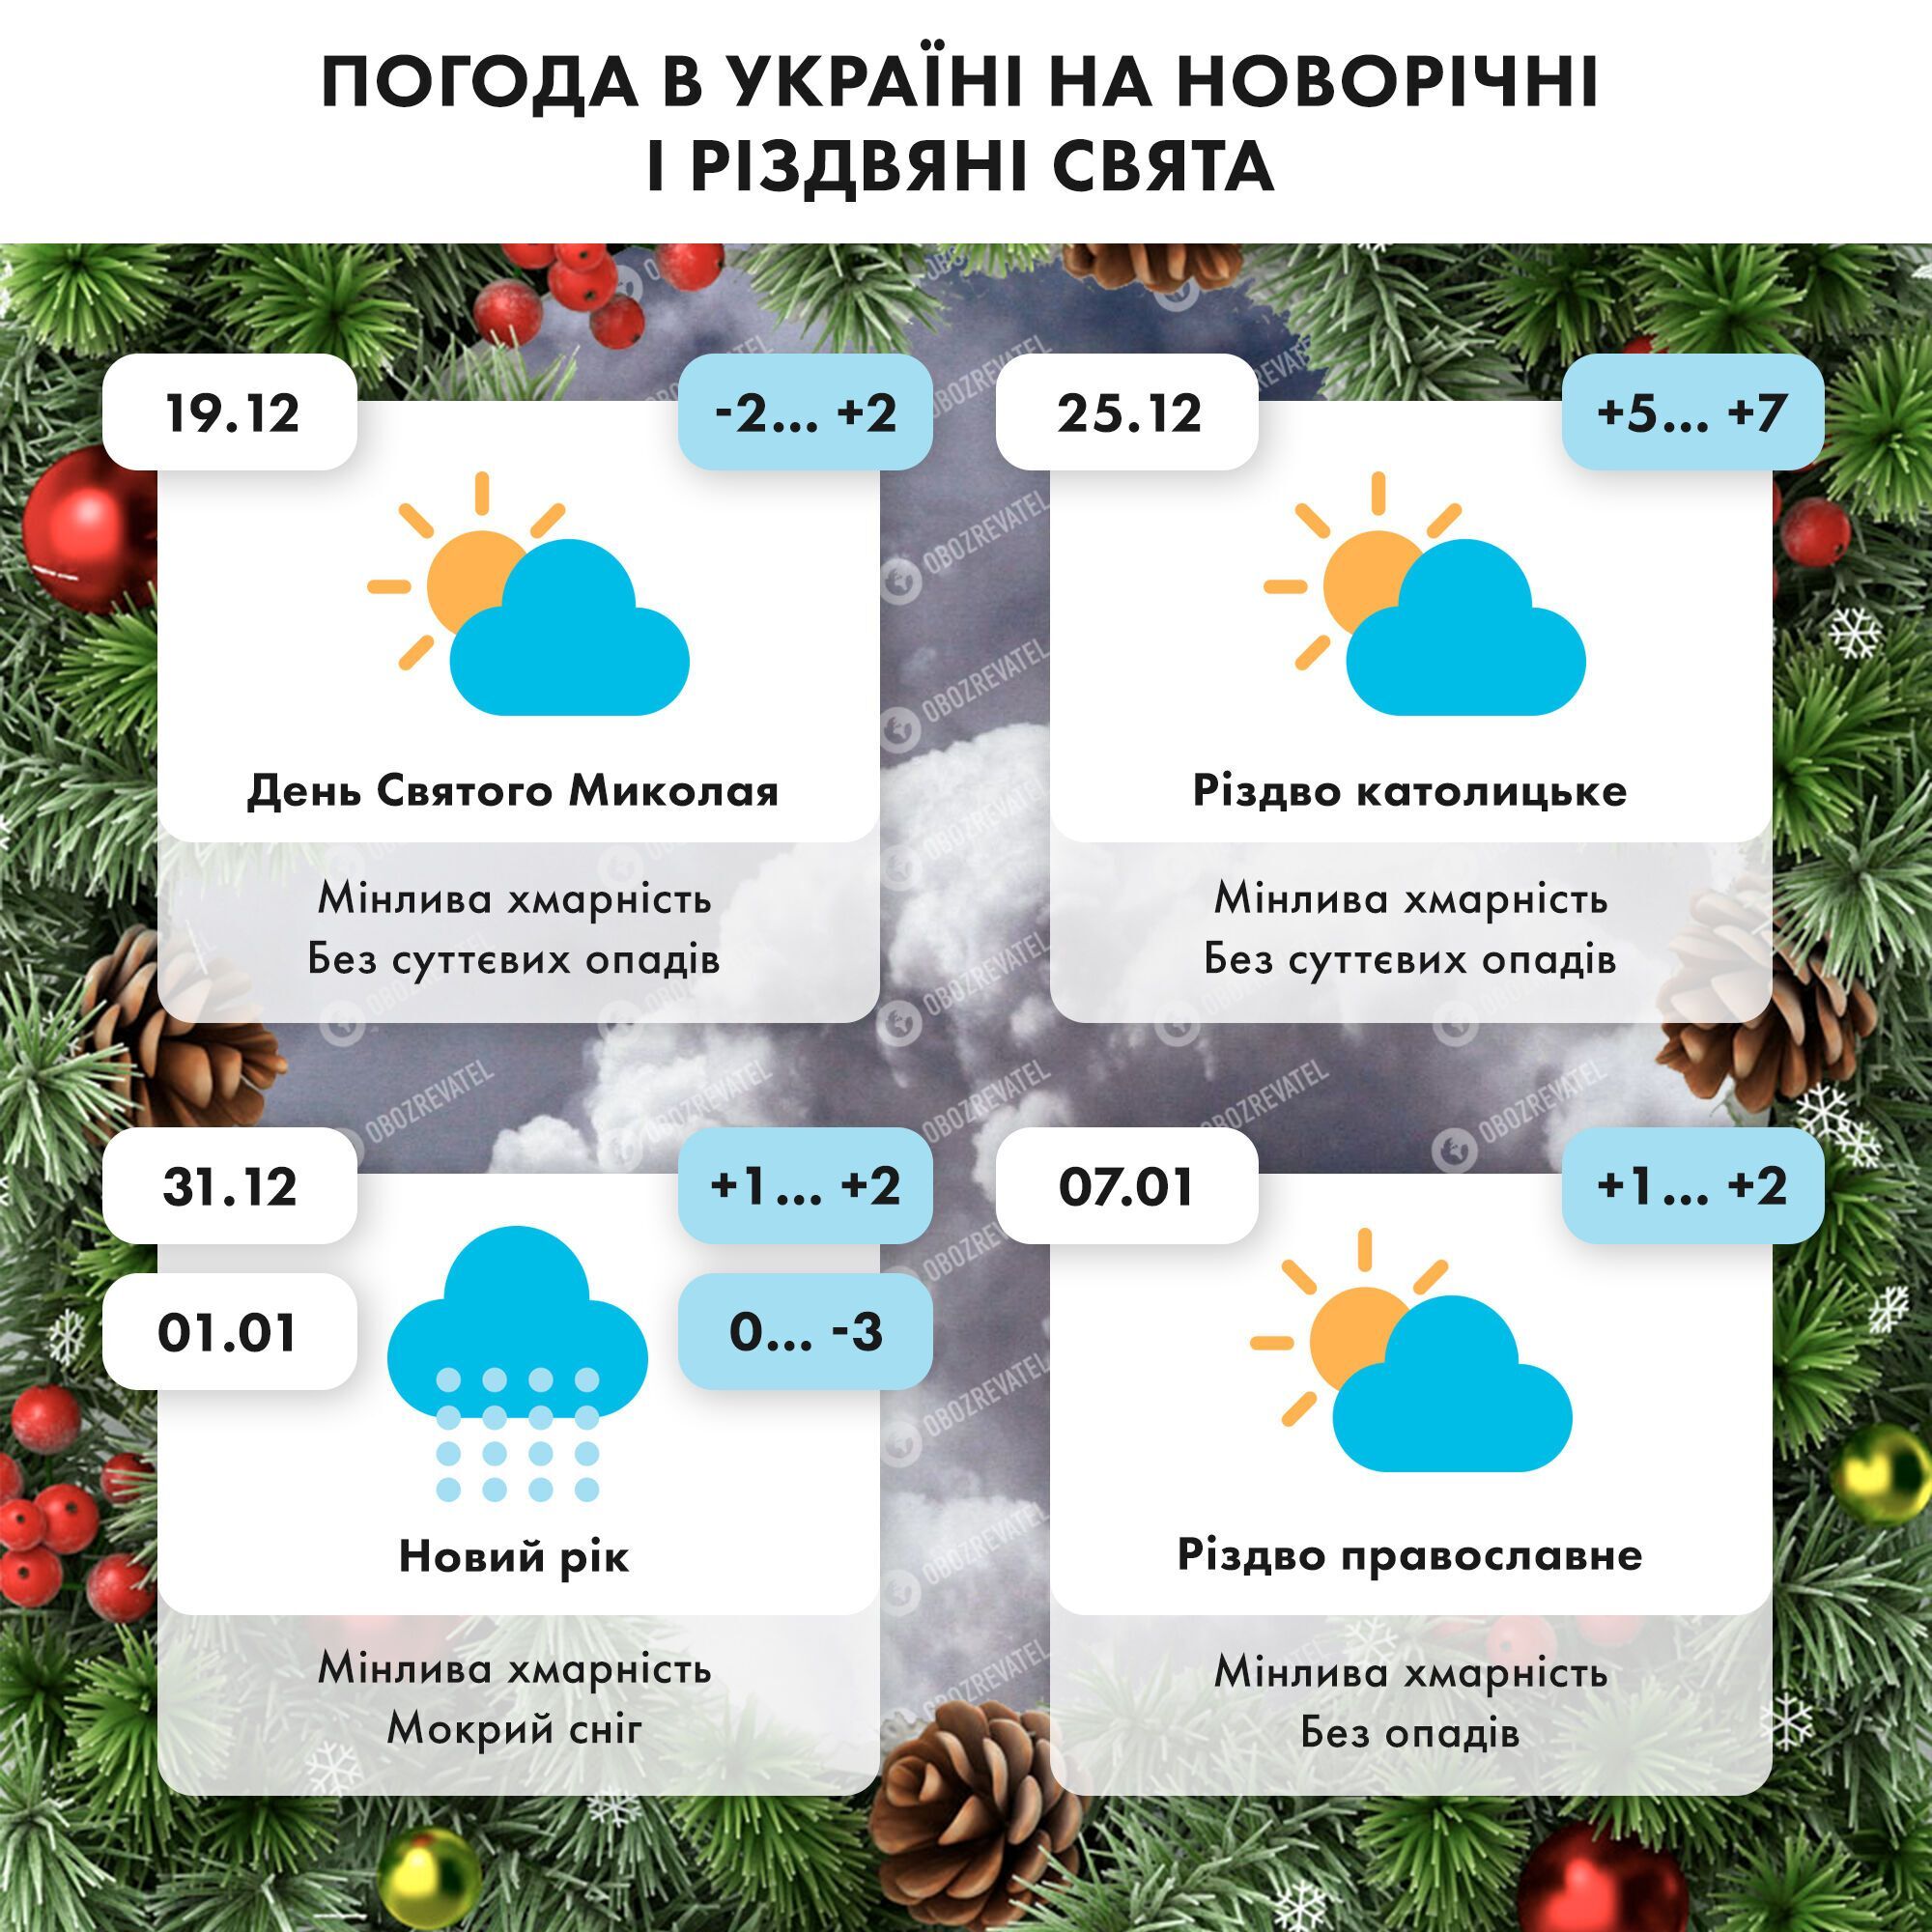 Погода на новогодние и рождественские праздники в Украине.